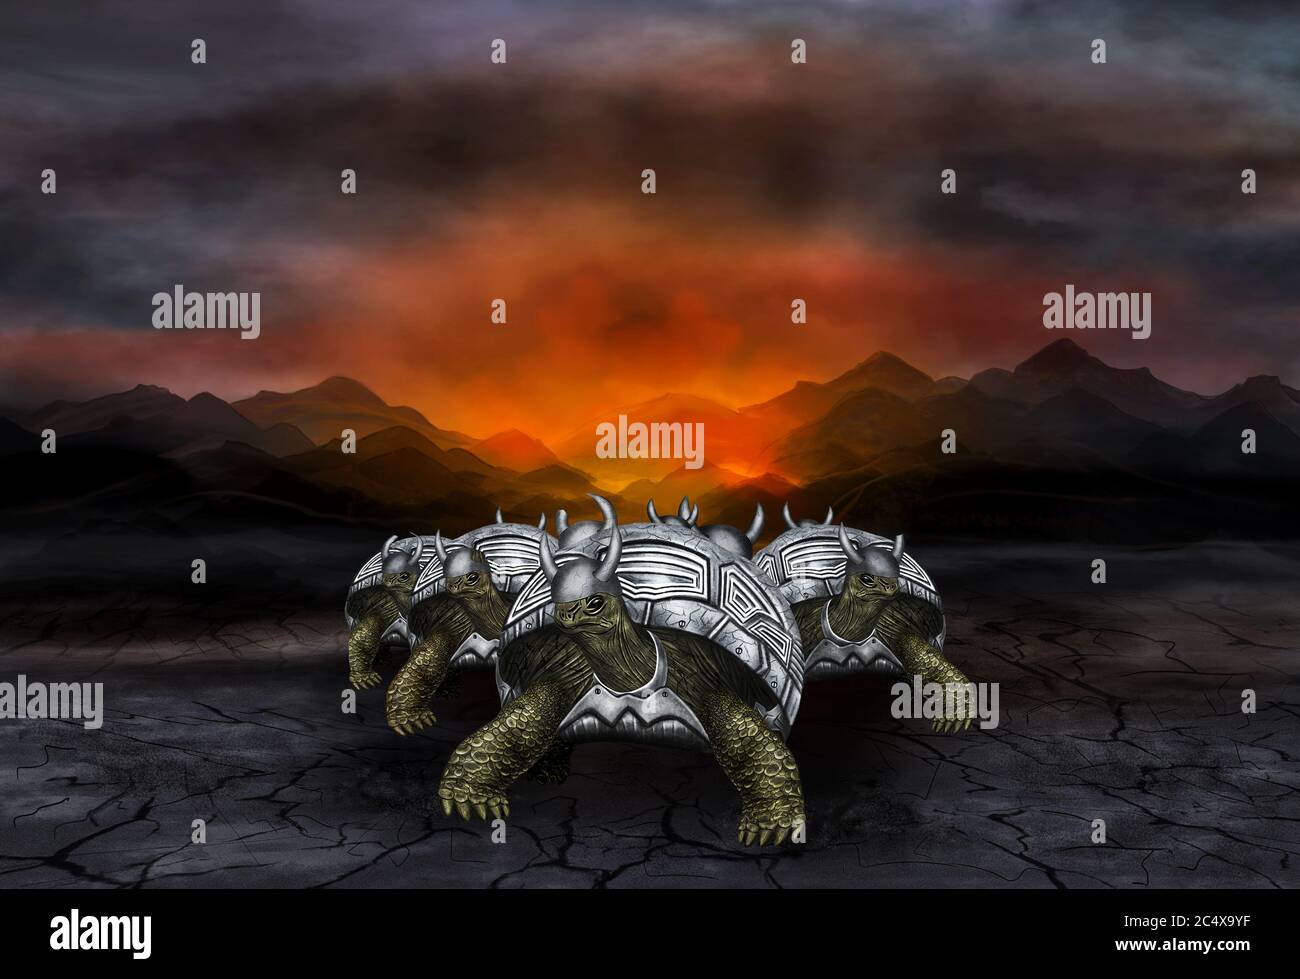 Schildkröten Krieger in Metallrüstung. Schildkröten Krieger aus dem Krieg zurück. Wüste, im Hintergrund ein feuriges Leuchten. Digitale Grafiken. Stockfoto